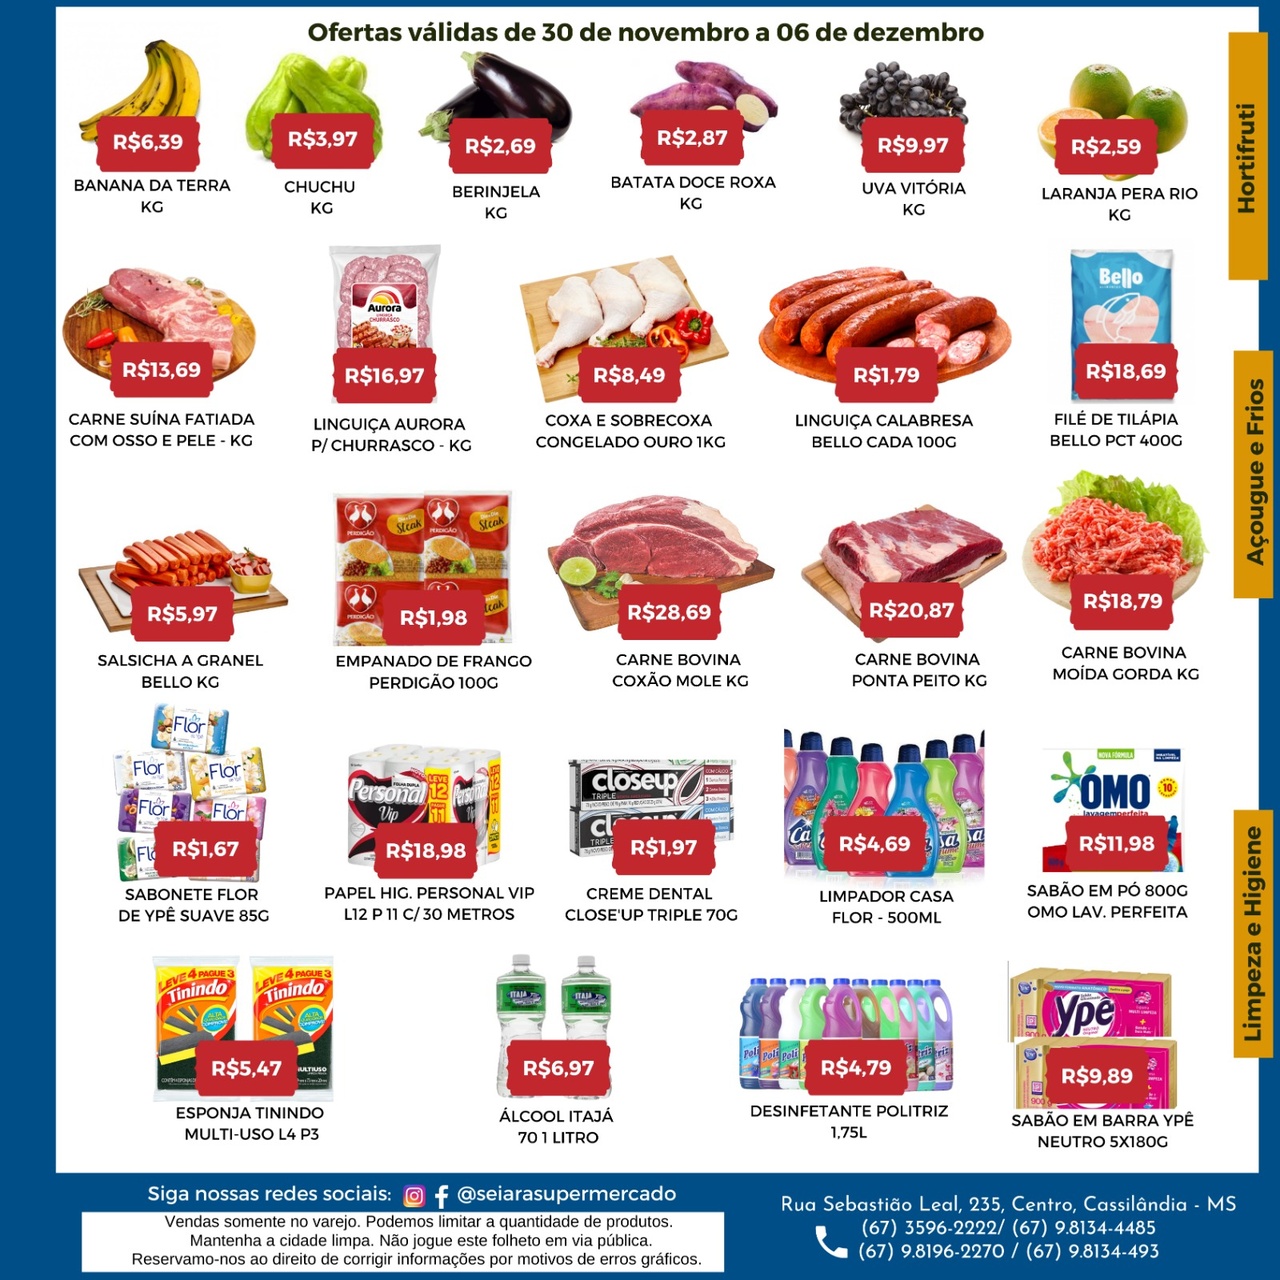 Seiara Supermercado Econ&ocirc;mico: confira as ofertas da semana (30/11 &agrave; 06/12)